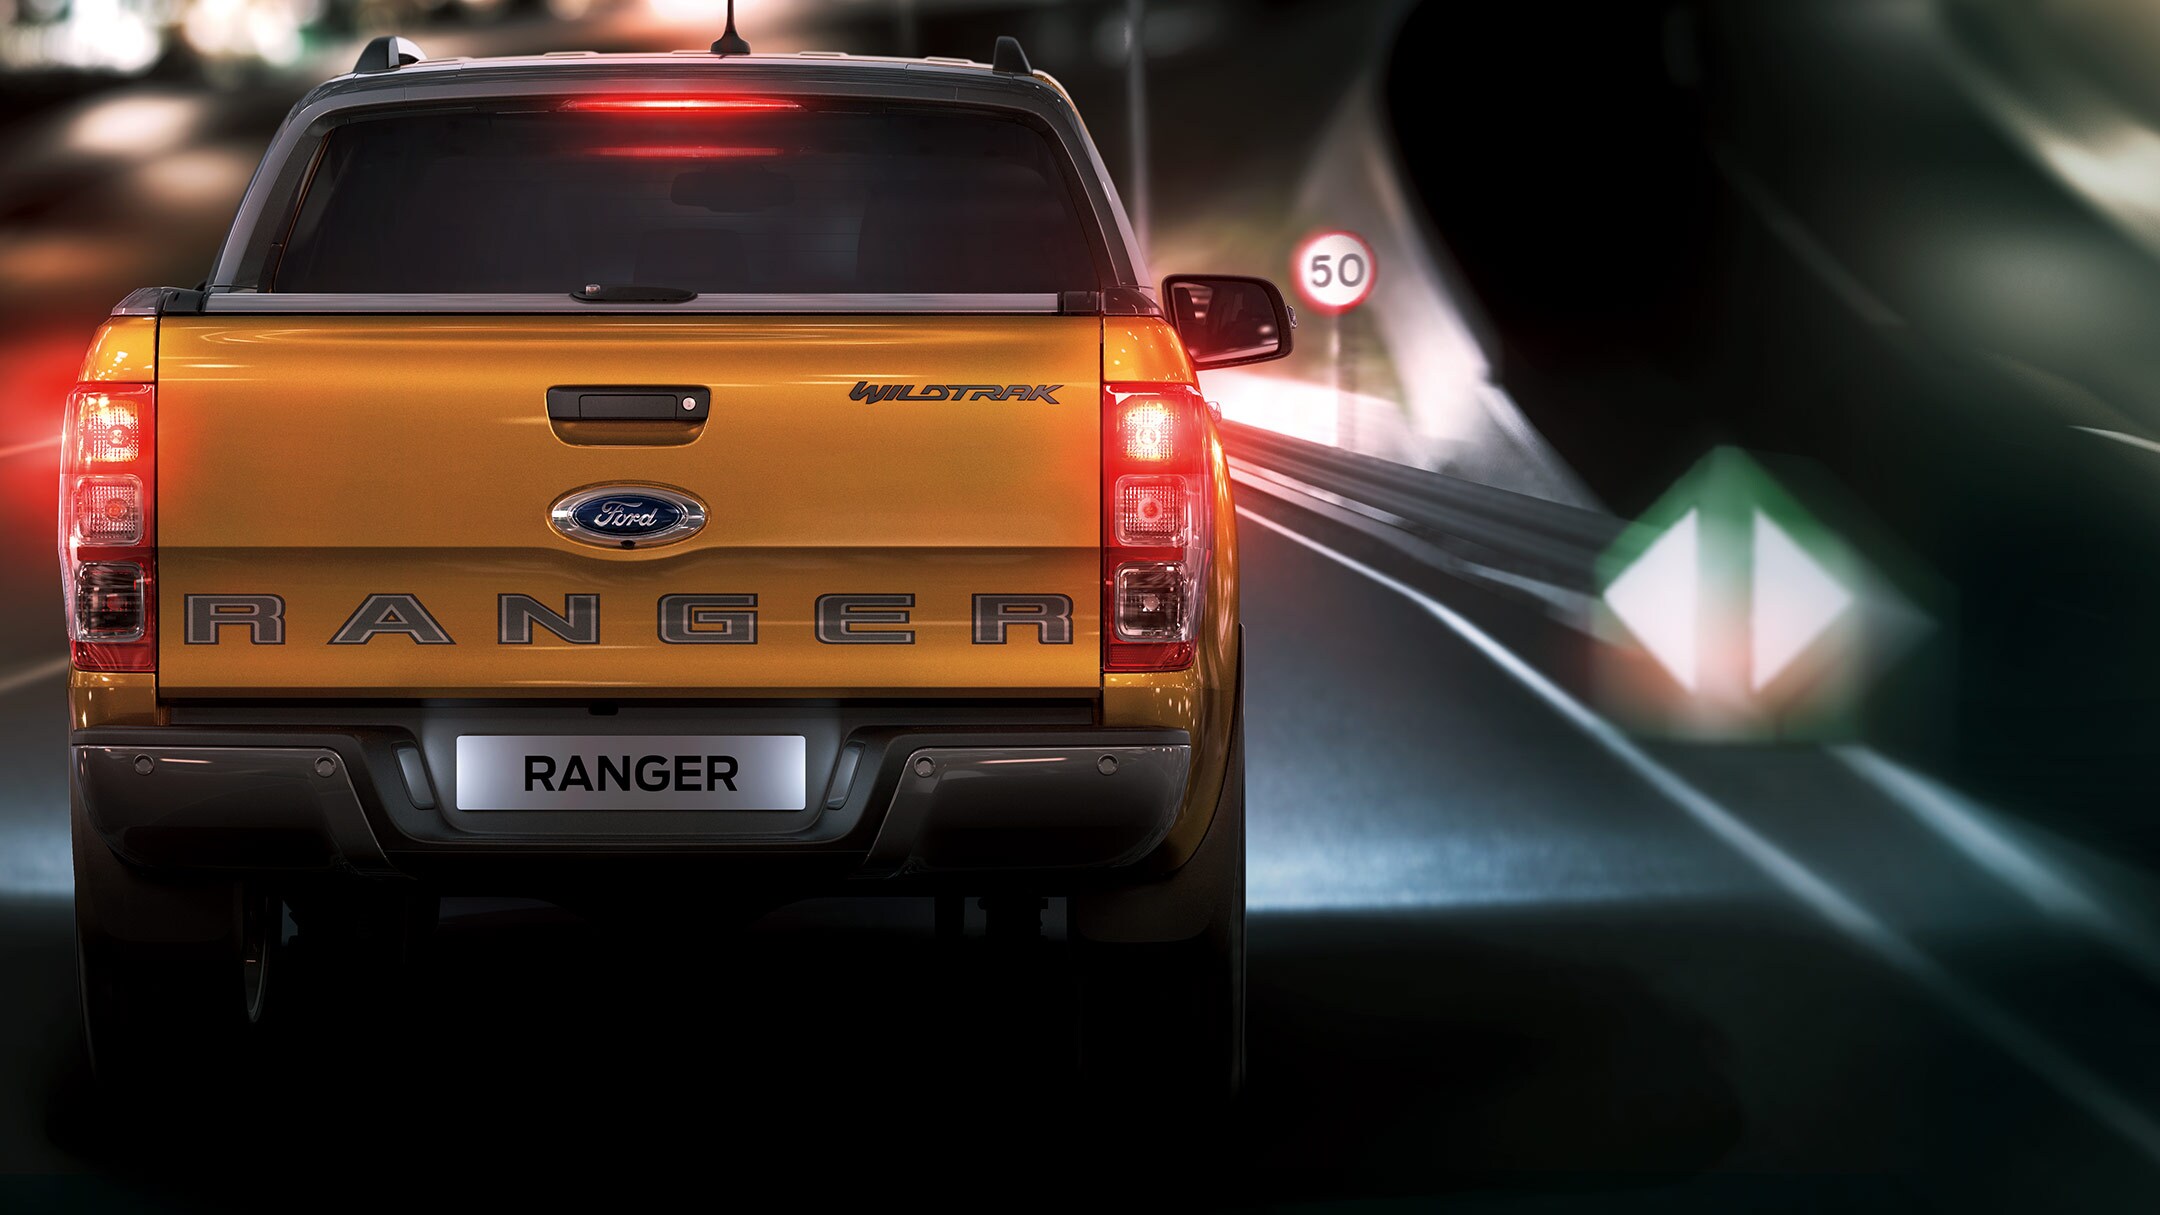 Ford Ranger couleur orange, vue arrière, roulant sur une route de nuit